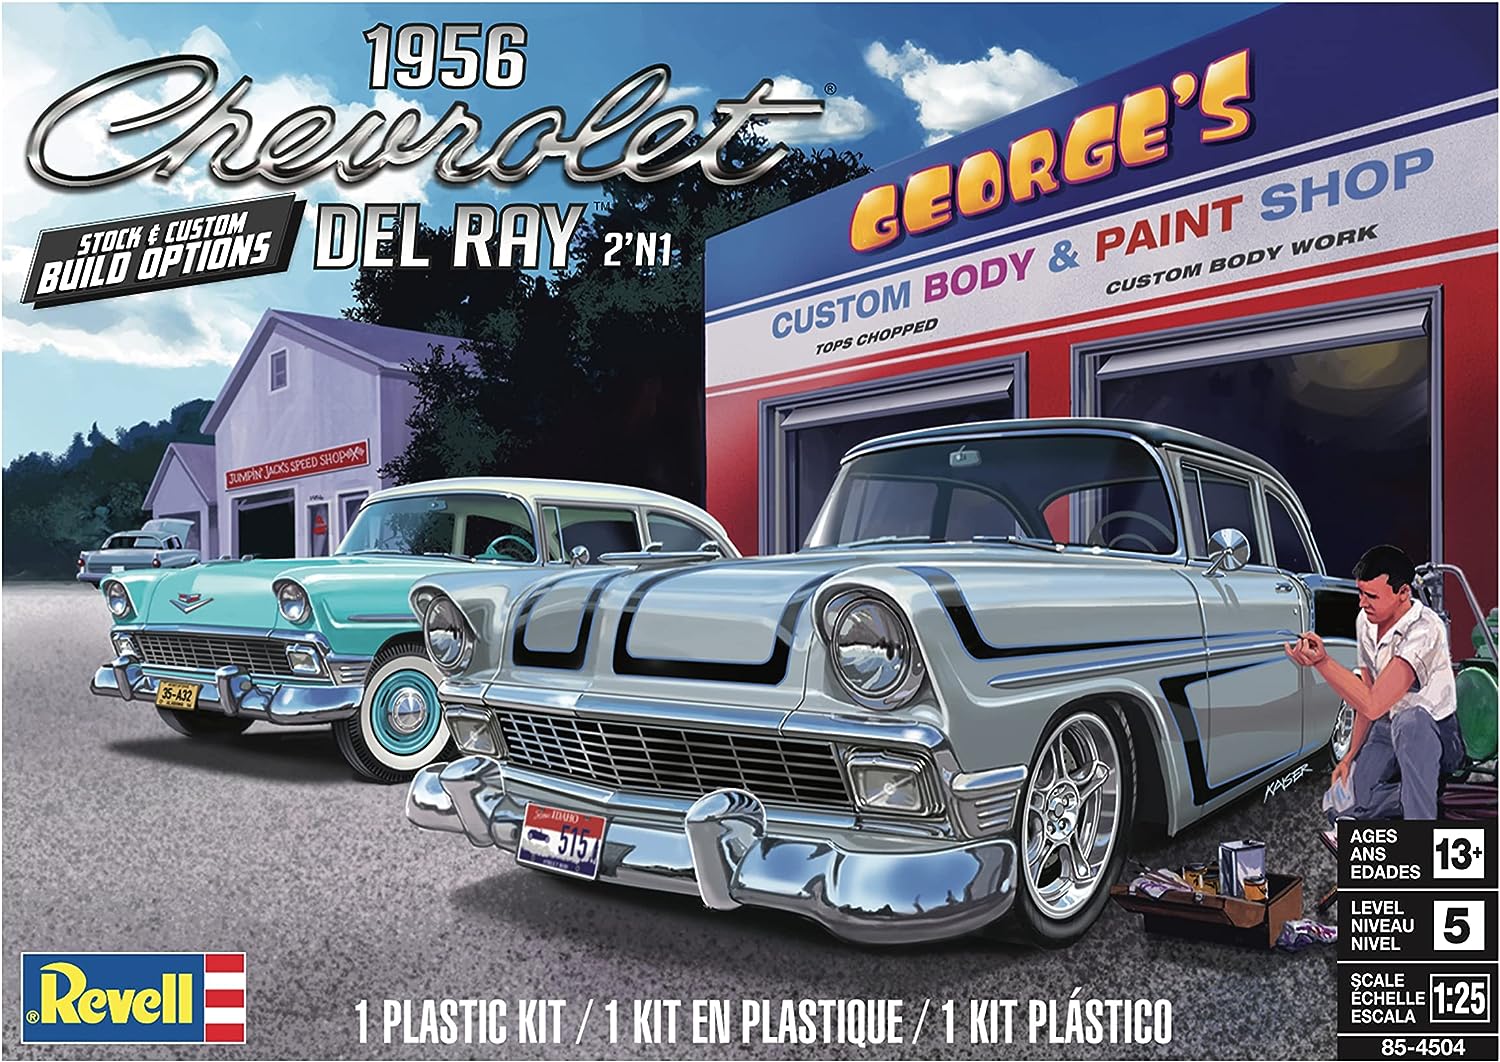 Revell 85-4504 1956 Chevrolet Del Ray 2’N1 1/25 Scale Model Kit